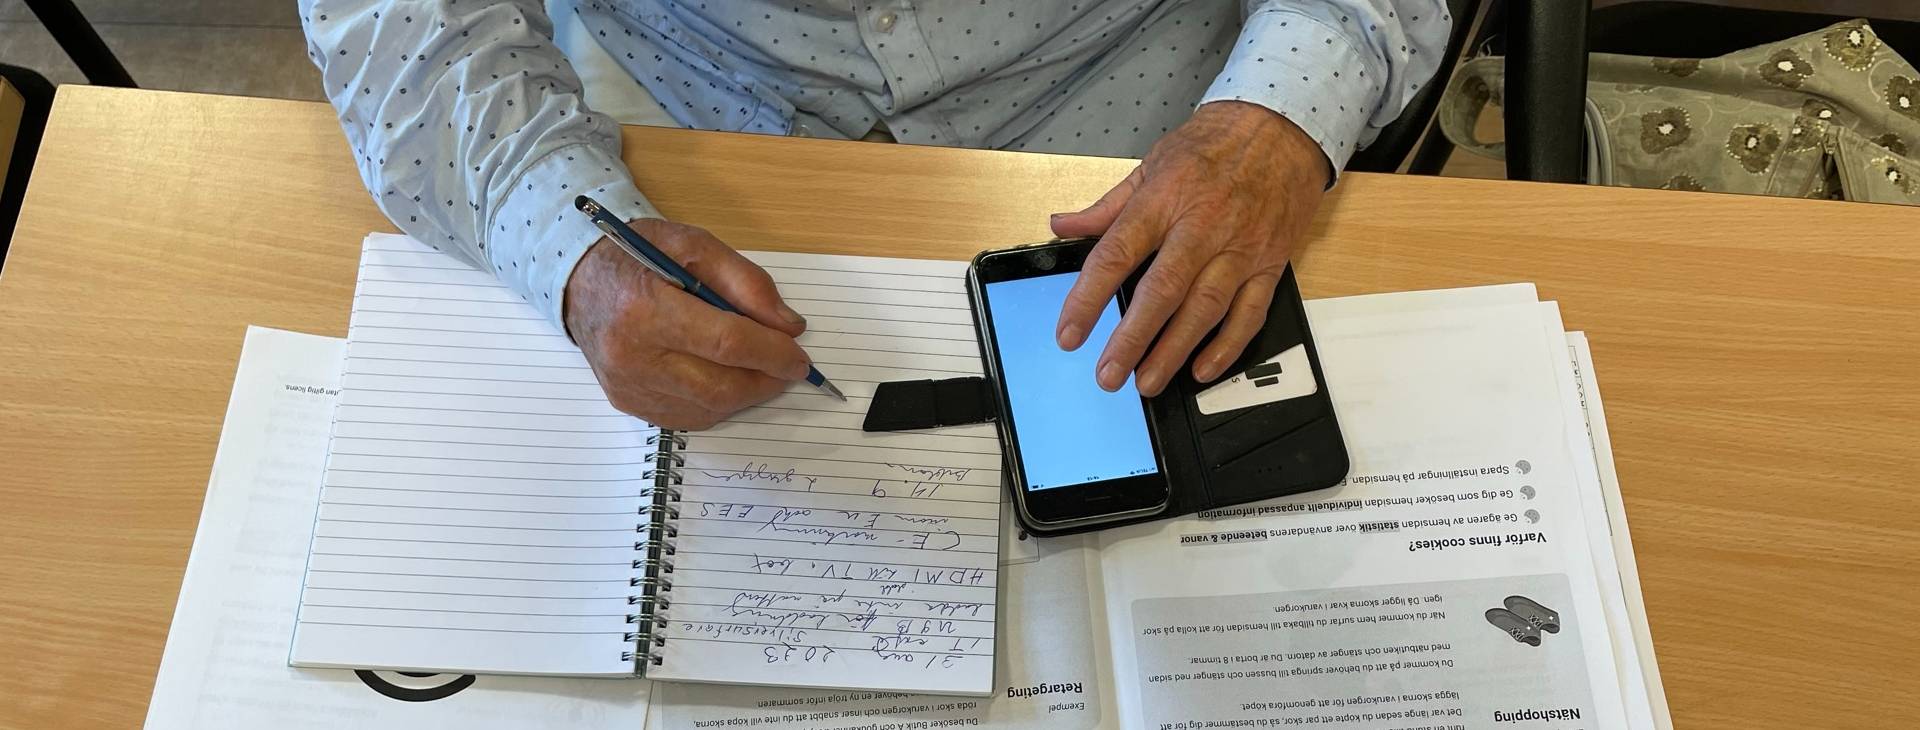 Händerna på en person som sitter vid ett skrivbord med en mobiltelefon och anteckningsblock.